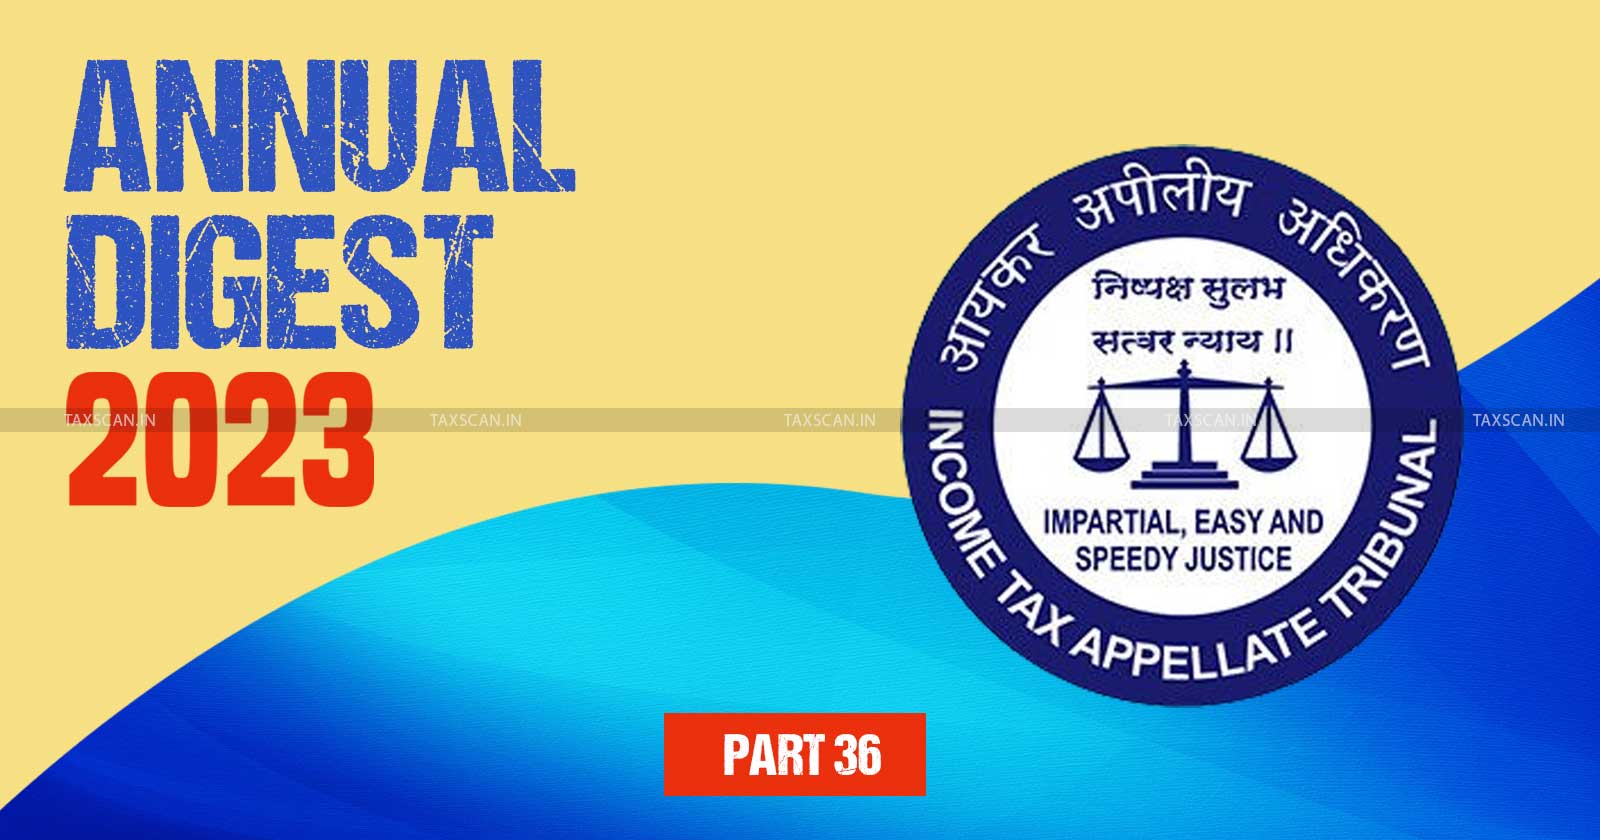 ITAT Annual Digest - Tax tribunal updates - ITAT decisions - ITAT Cases - Key tax judgments 2023 - ITAT - taxscan